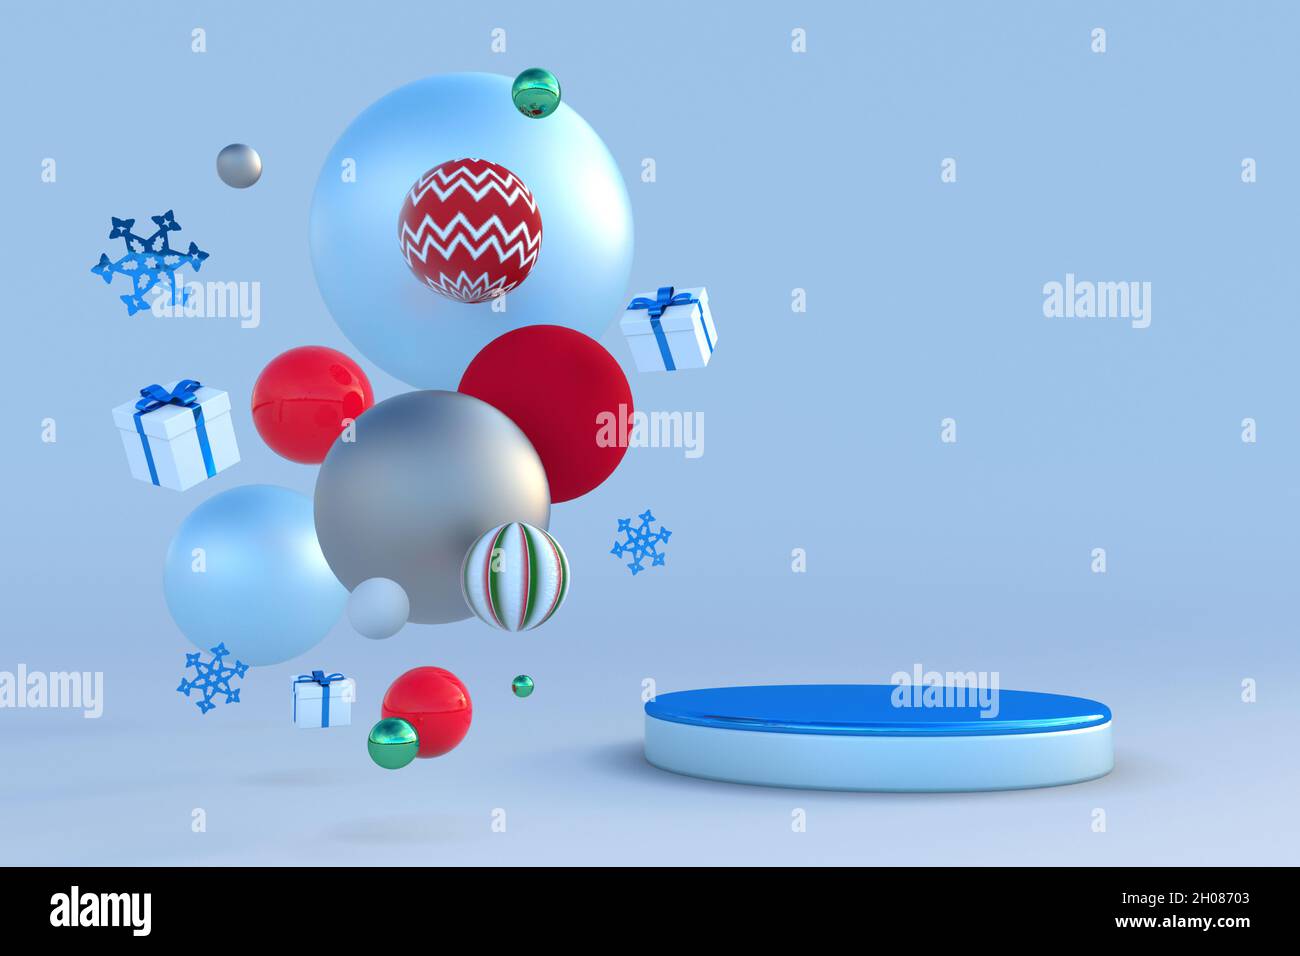 Résumé Rouge bleu festif 3D podium avec des flocons de neige de Noël et des cadeaux.Maquette d'hiver créative pour les fêtes du nouvel an, les promotions, les fêtes et les événements. Banque D'Images